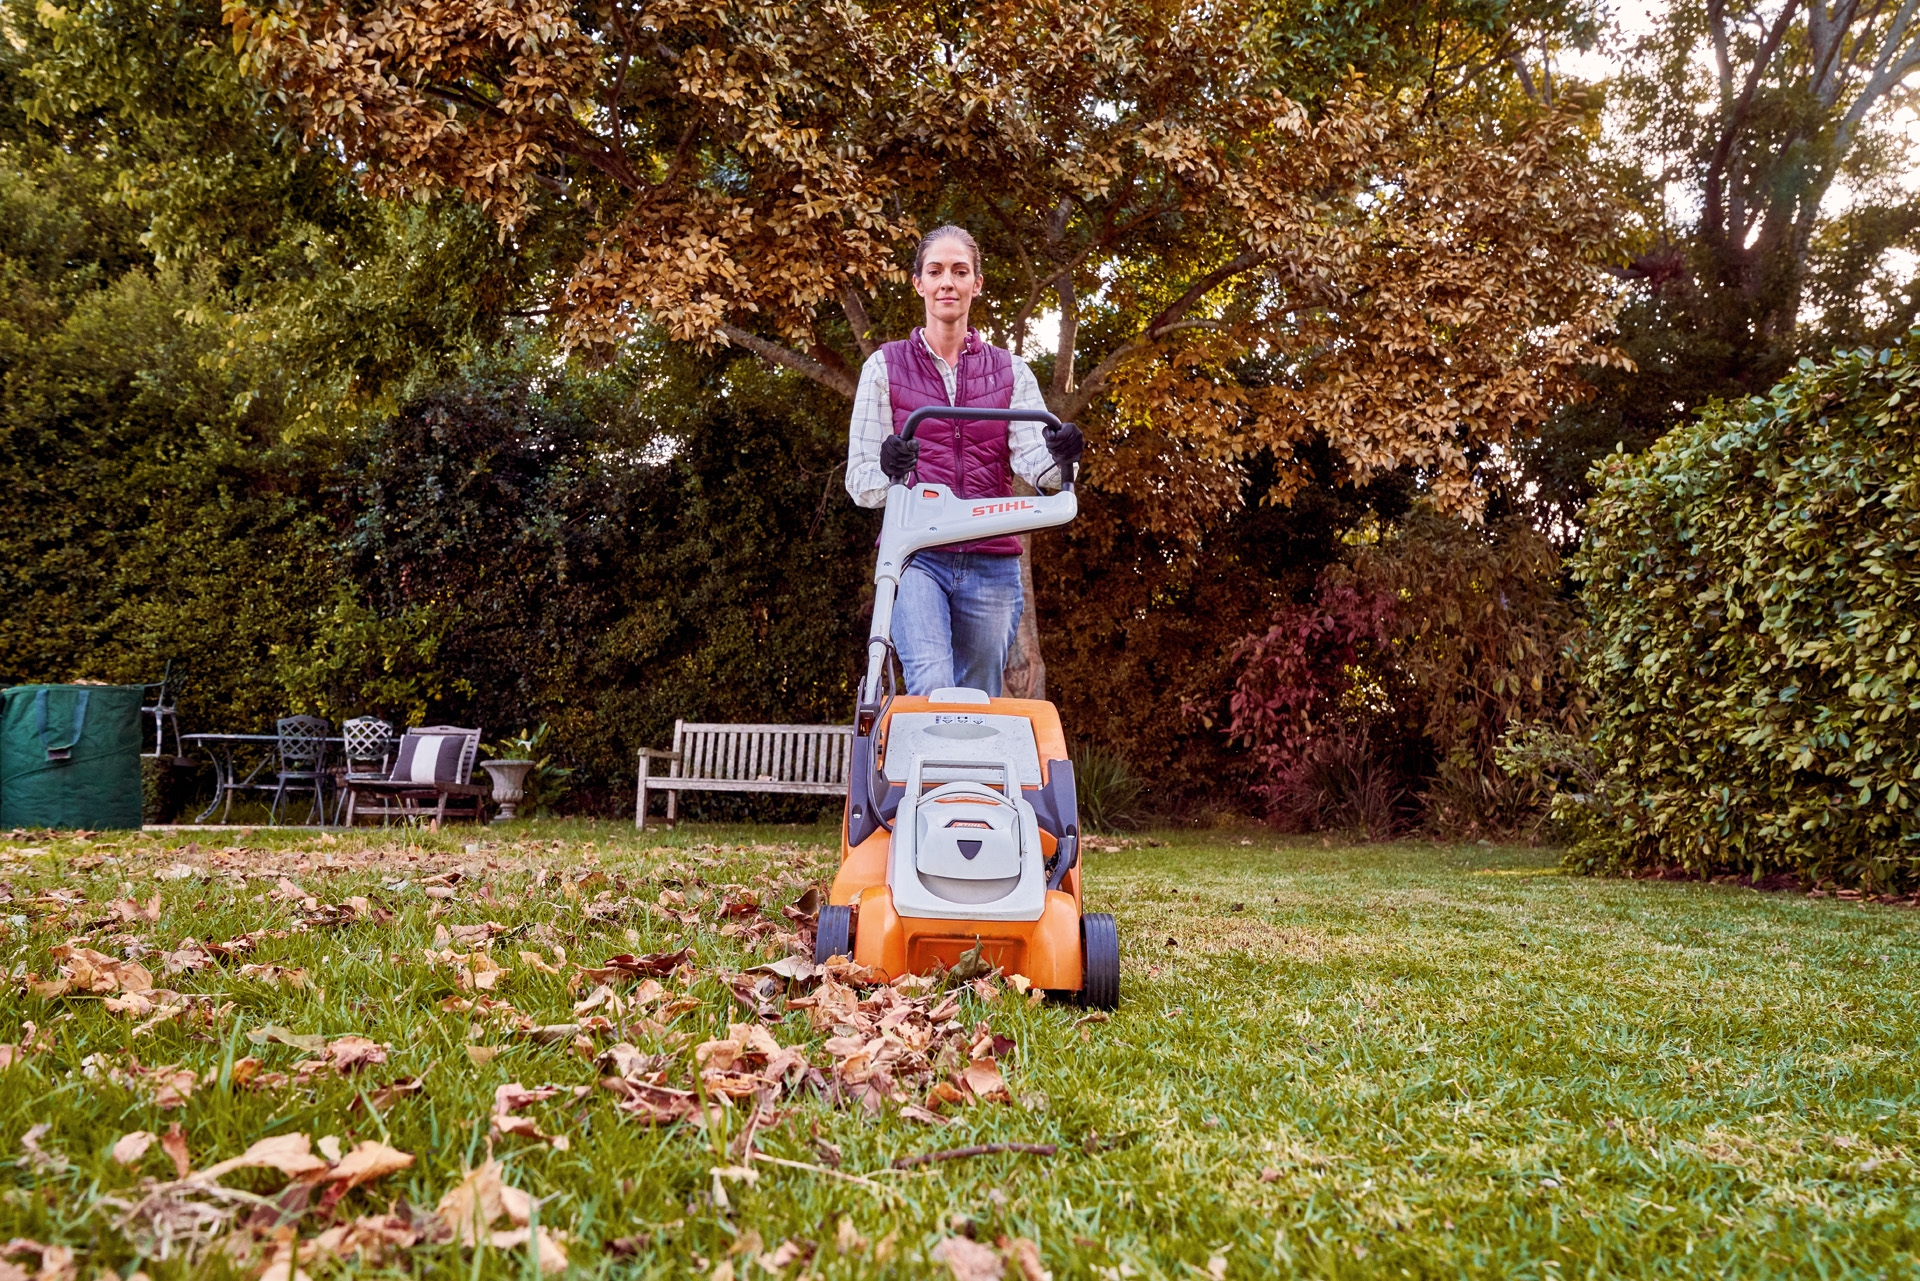 Žena používá k podzimní péči o trávník na zahradě akumulátorovou sekačku STIHL RMA 339 C